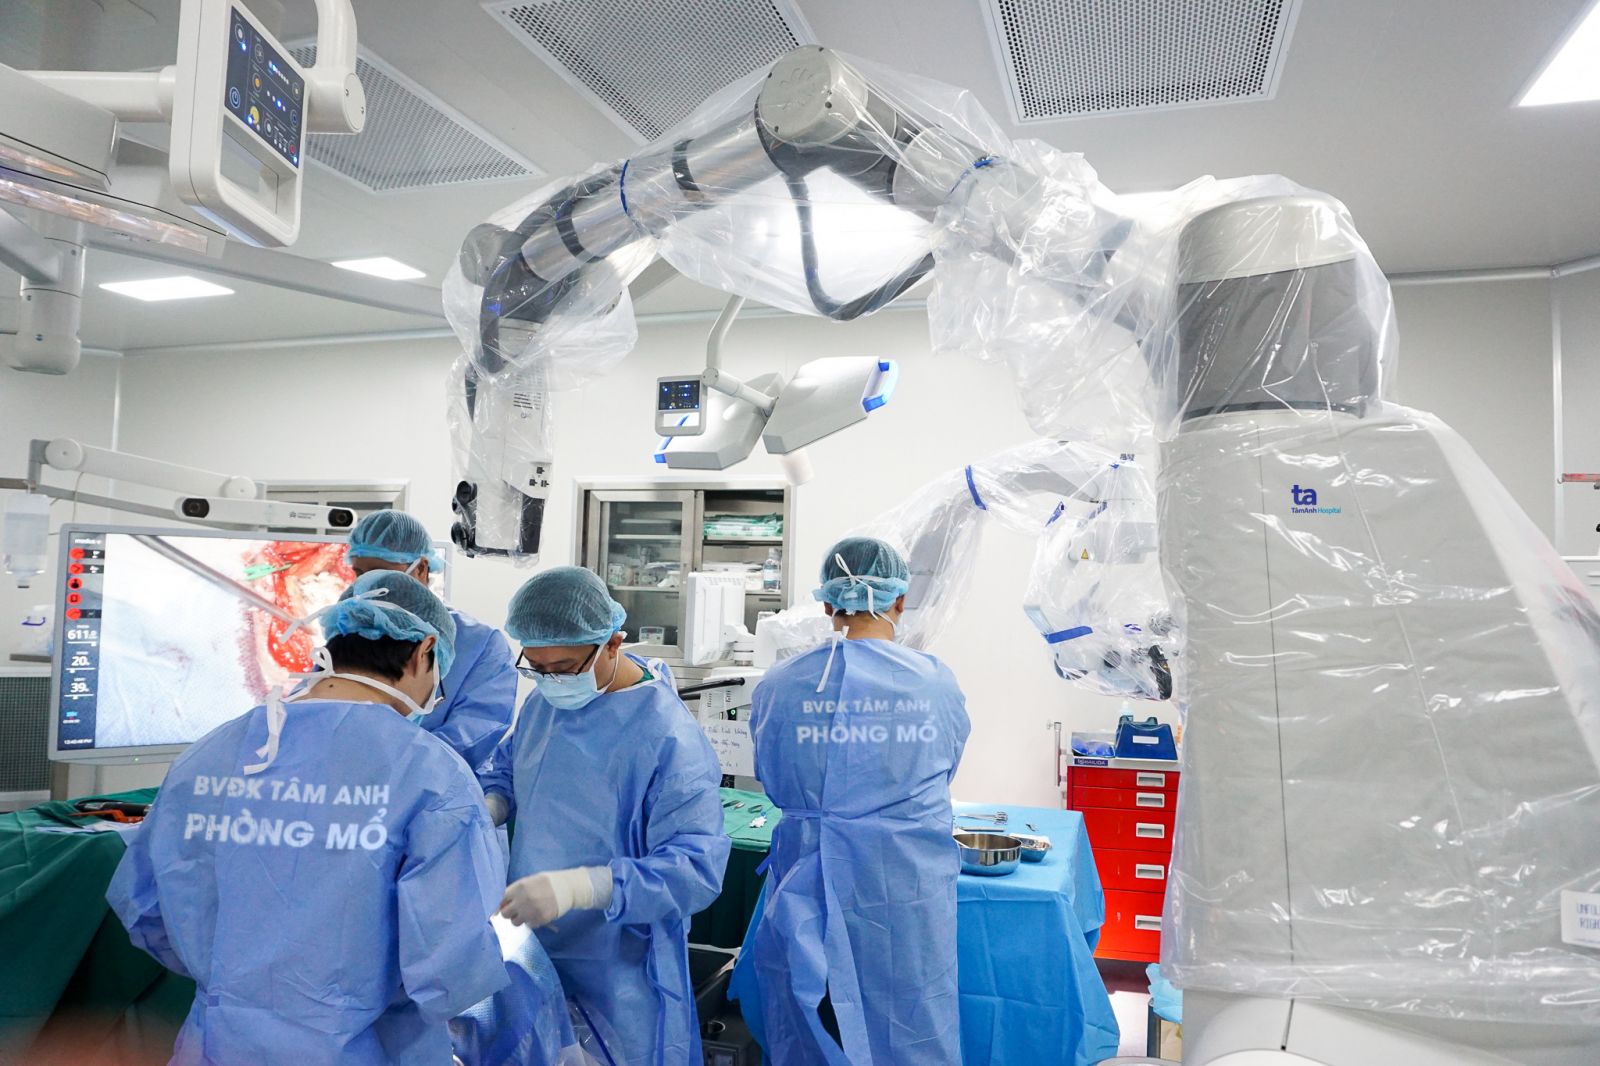 Hệ thống Robot Modus V Synaptive tiên tiến, hiện đại nhất trong phẫu thuật thần kinh hiện nay của Bệnh viện Tâm Anh là duy nhất tại Việt Nam.